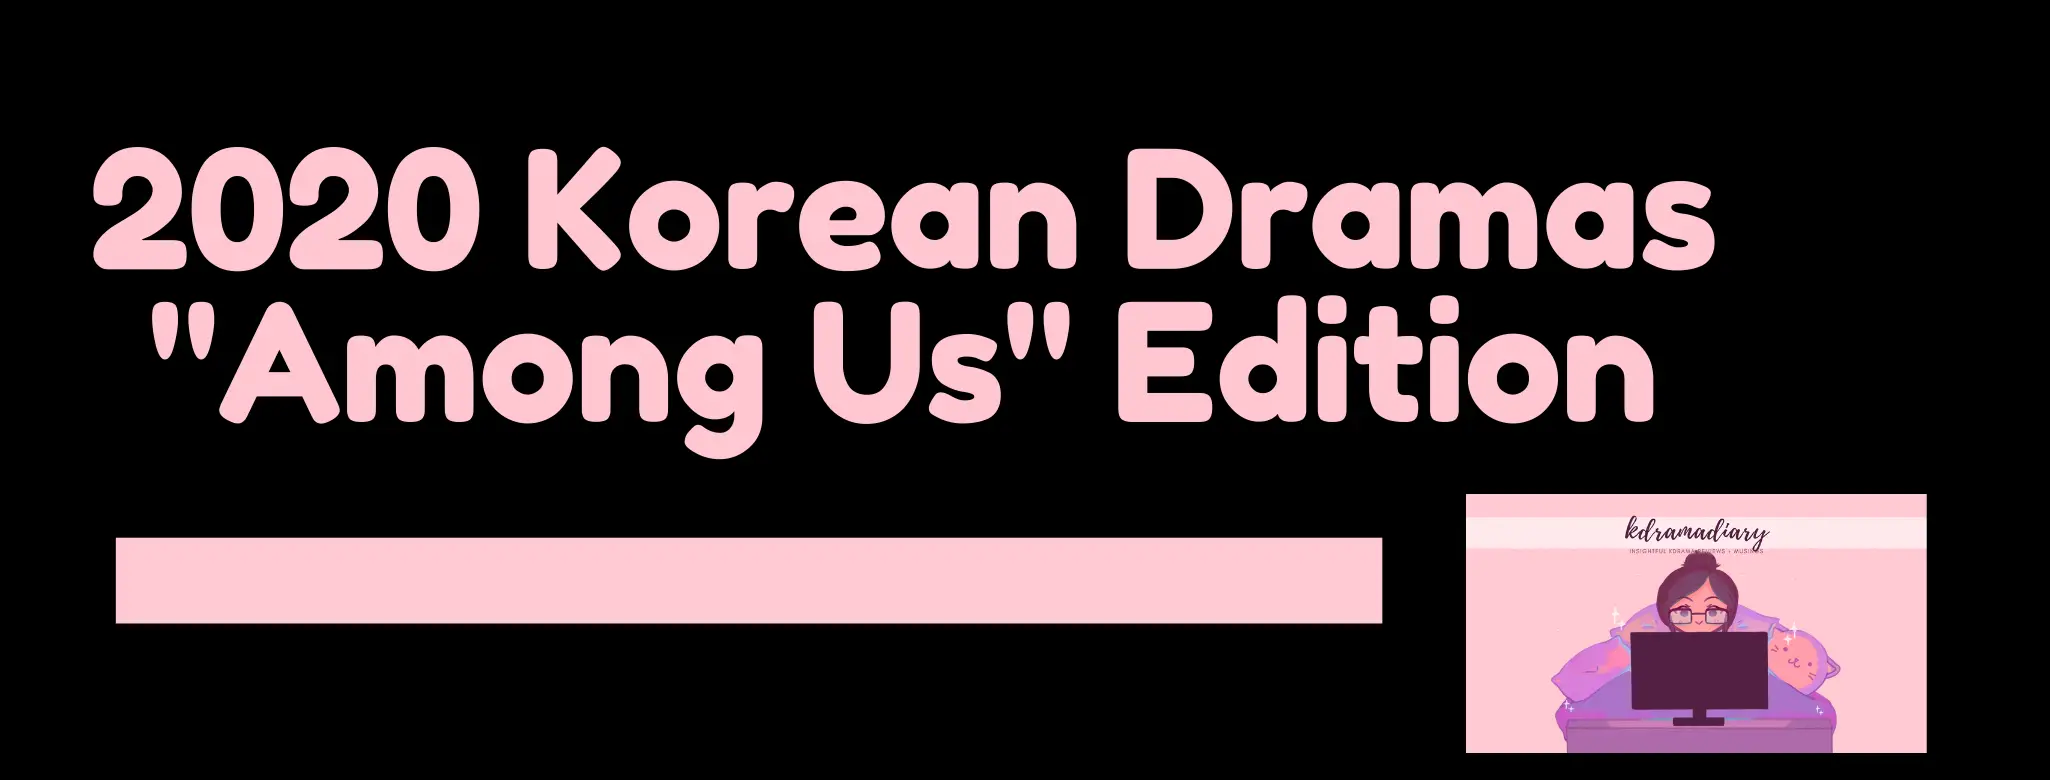 2020 Korean Drama characters